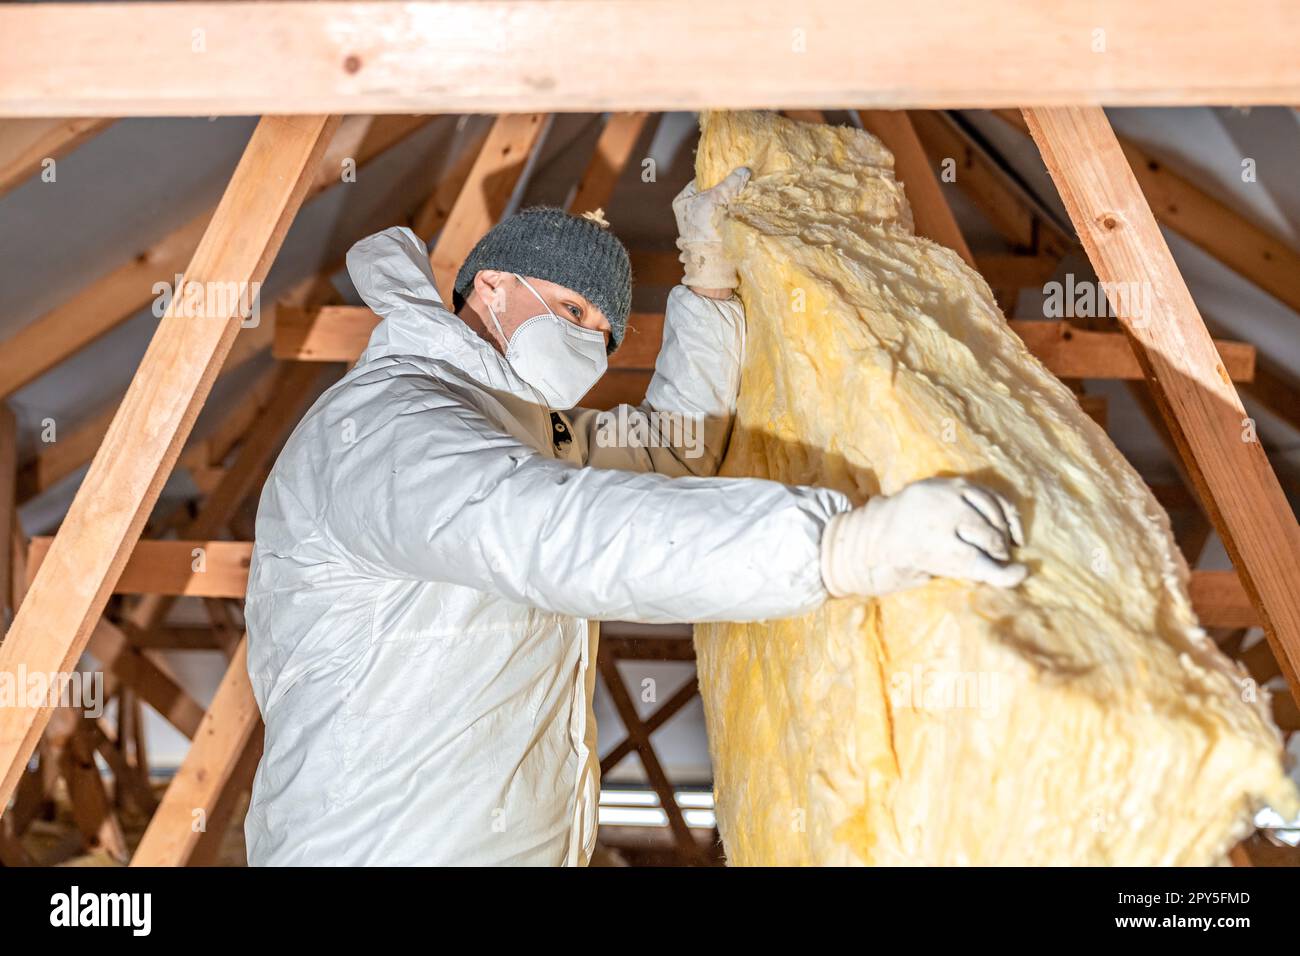 Man isoliert das Dach und die Decke des Hauses mit Glaswolle Stockfotografie  - Alamy